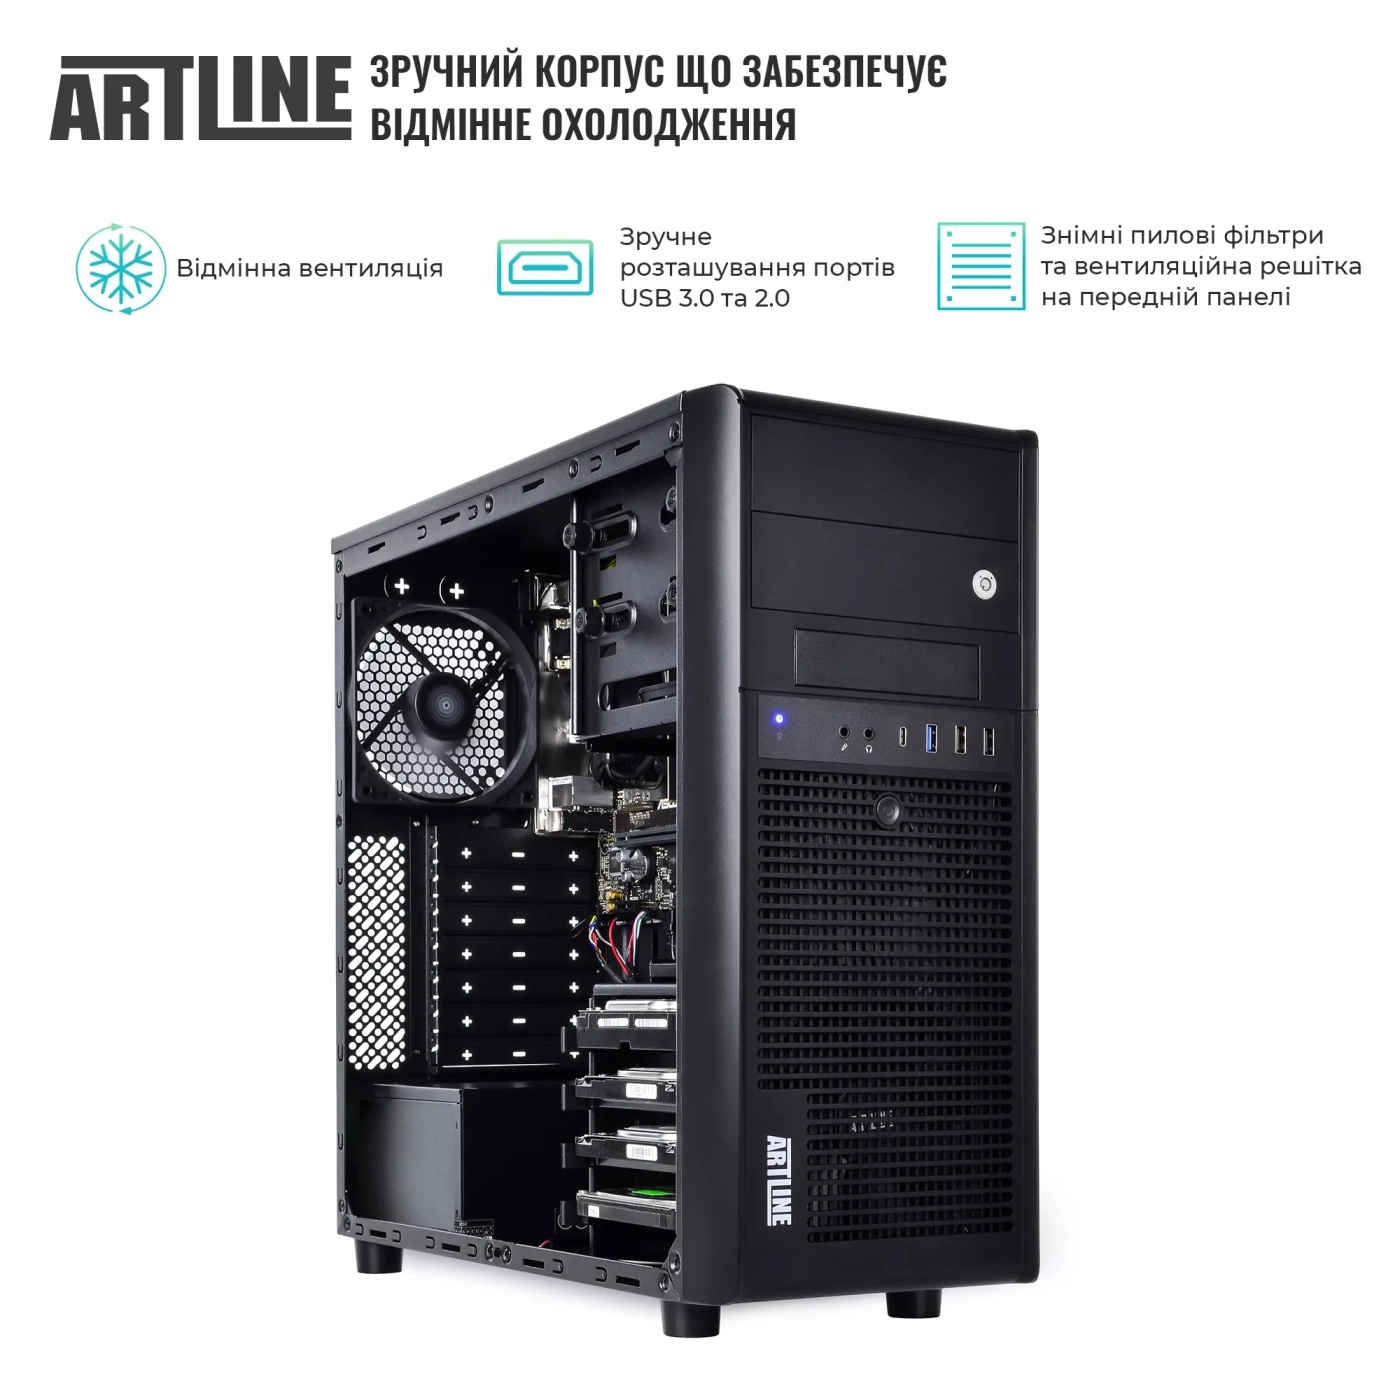 Купить Сервер ARTLINE Business T38 (T38v31) - фото 3